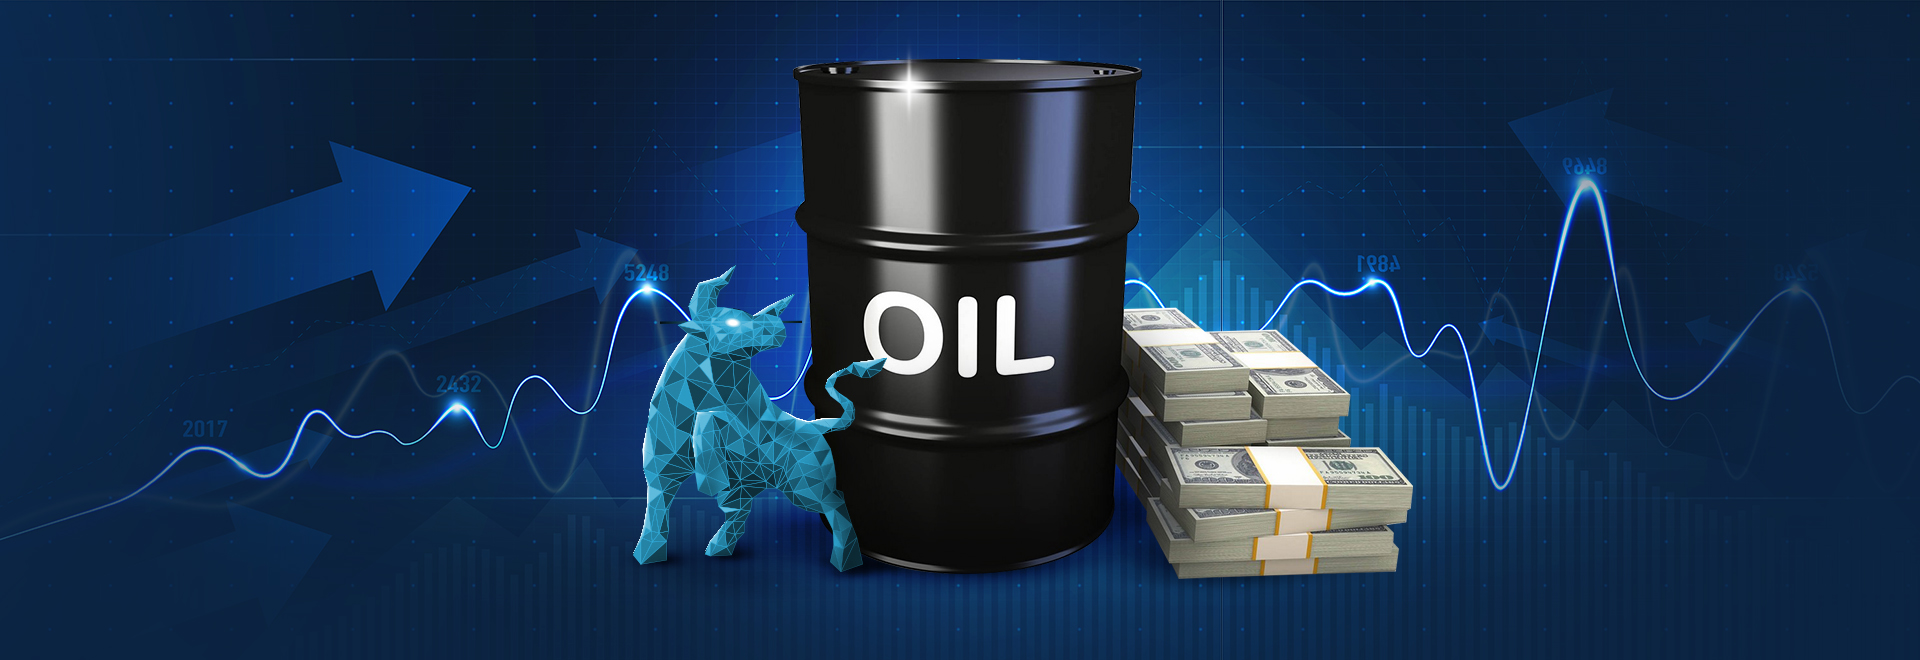 وضعیت در حال تحول در بخش نفت نیجریه